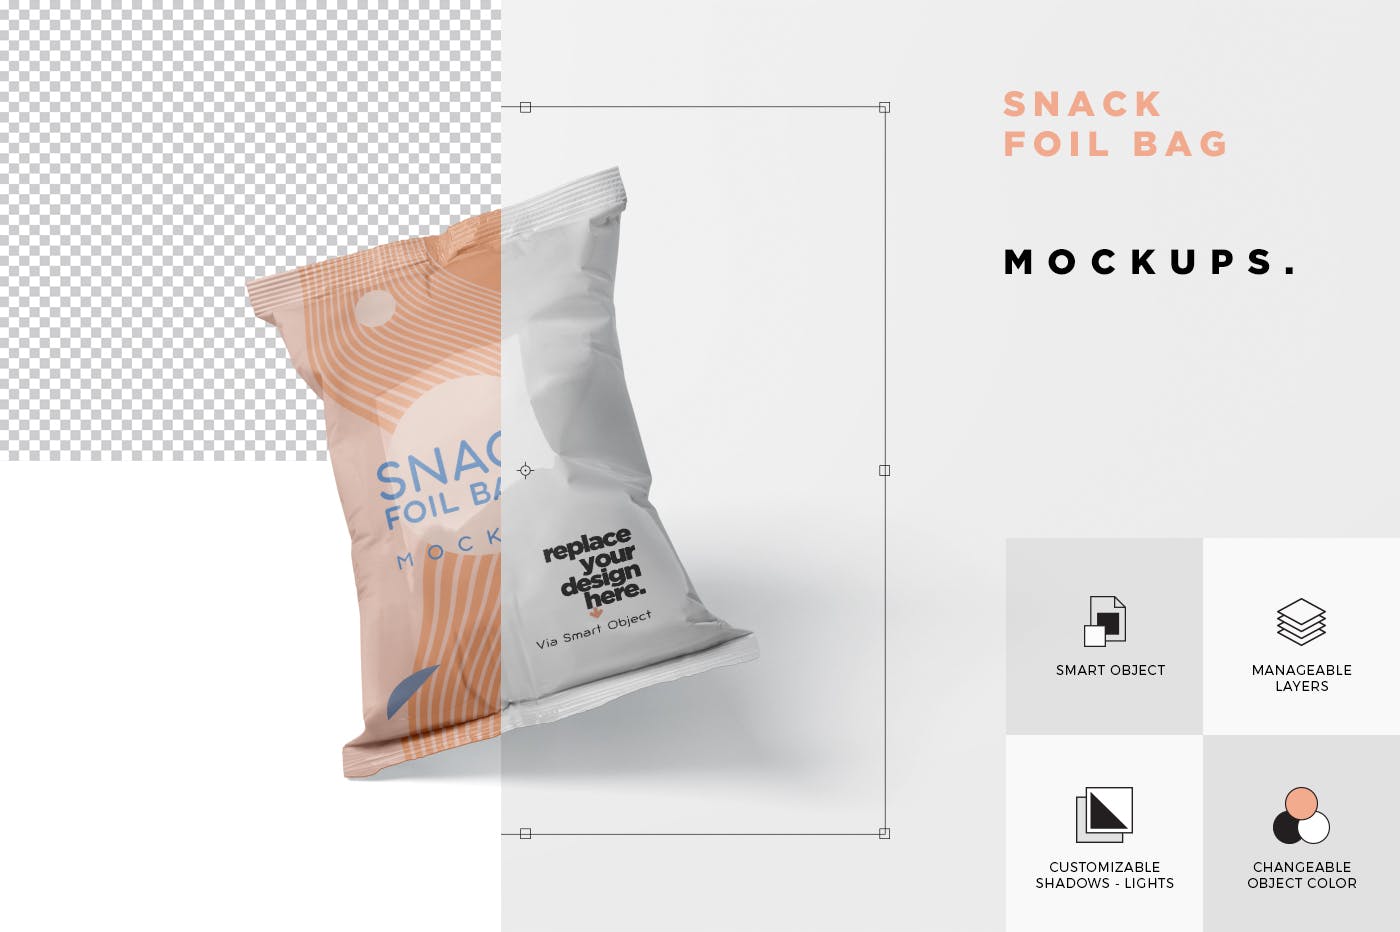 小吃零食铝箔袋/塑料包装袋设计图非凡图库精选 Snack Foil Bag Mockup – Plastic插图(5)